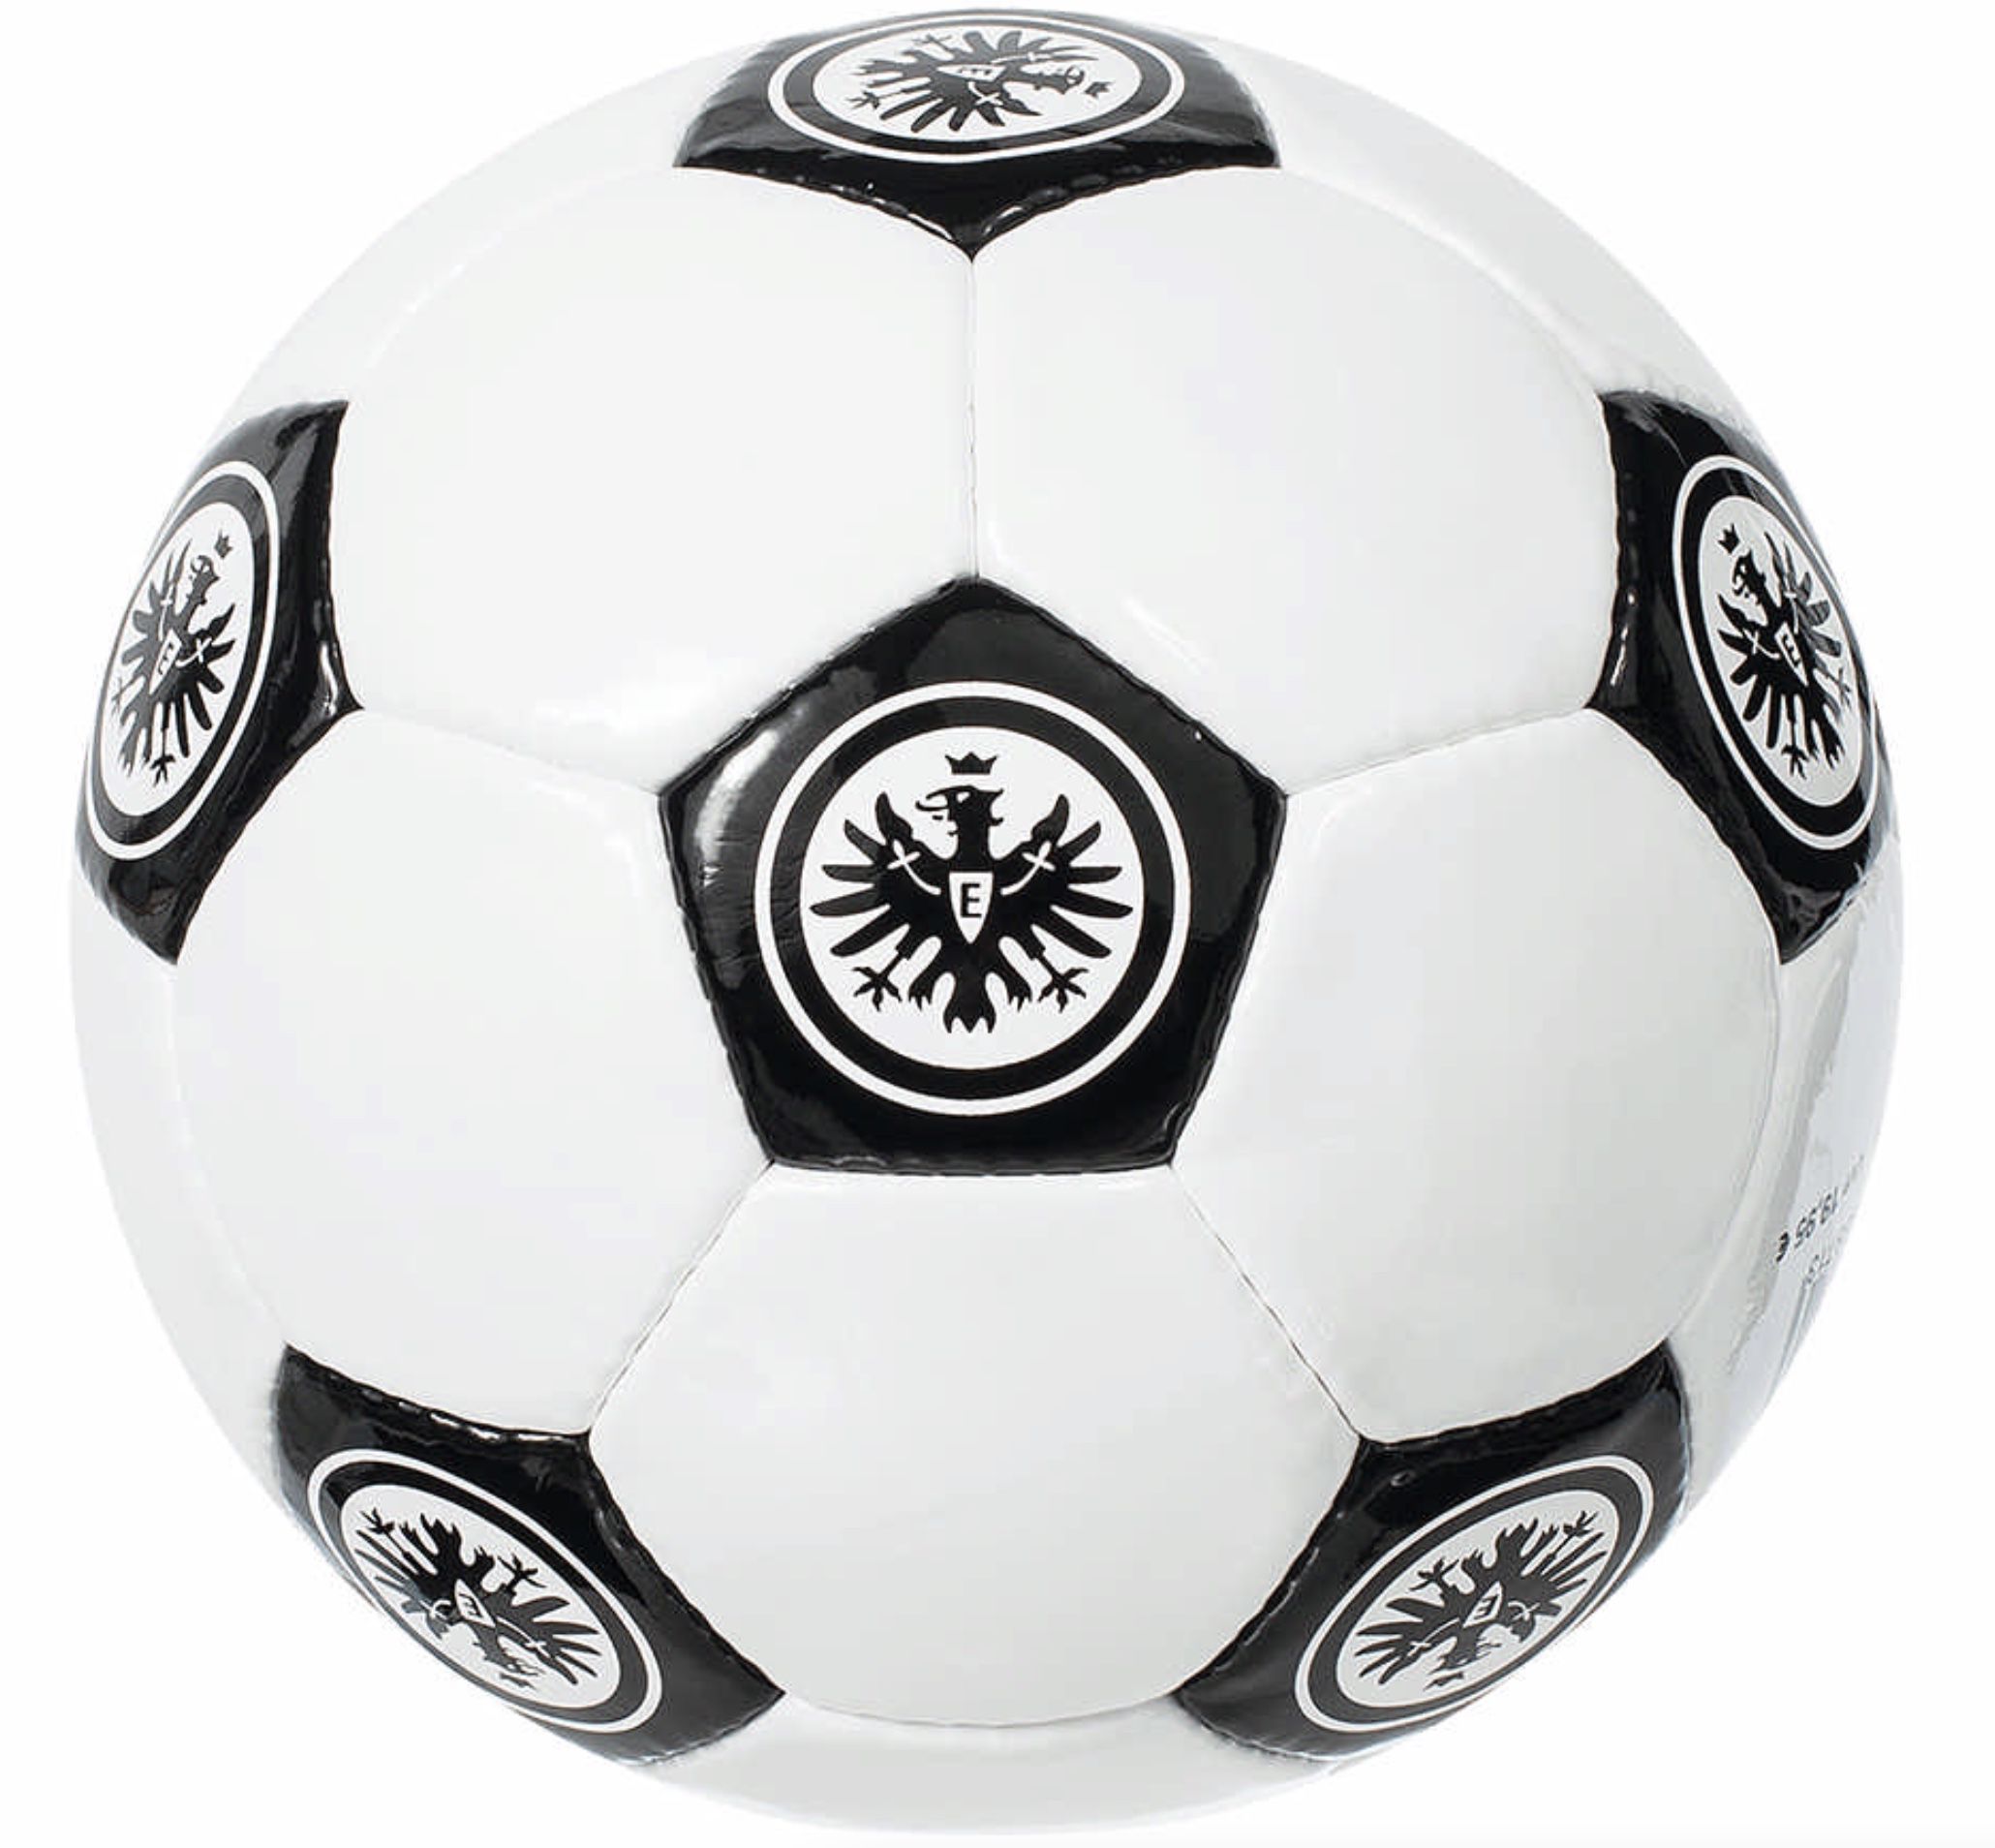 Eintracht Frankfurt Oldschool Fußball Größe 5 für 13€ (statt 25€)